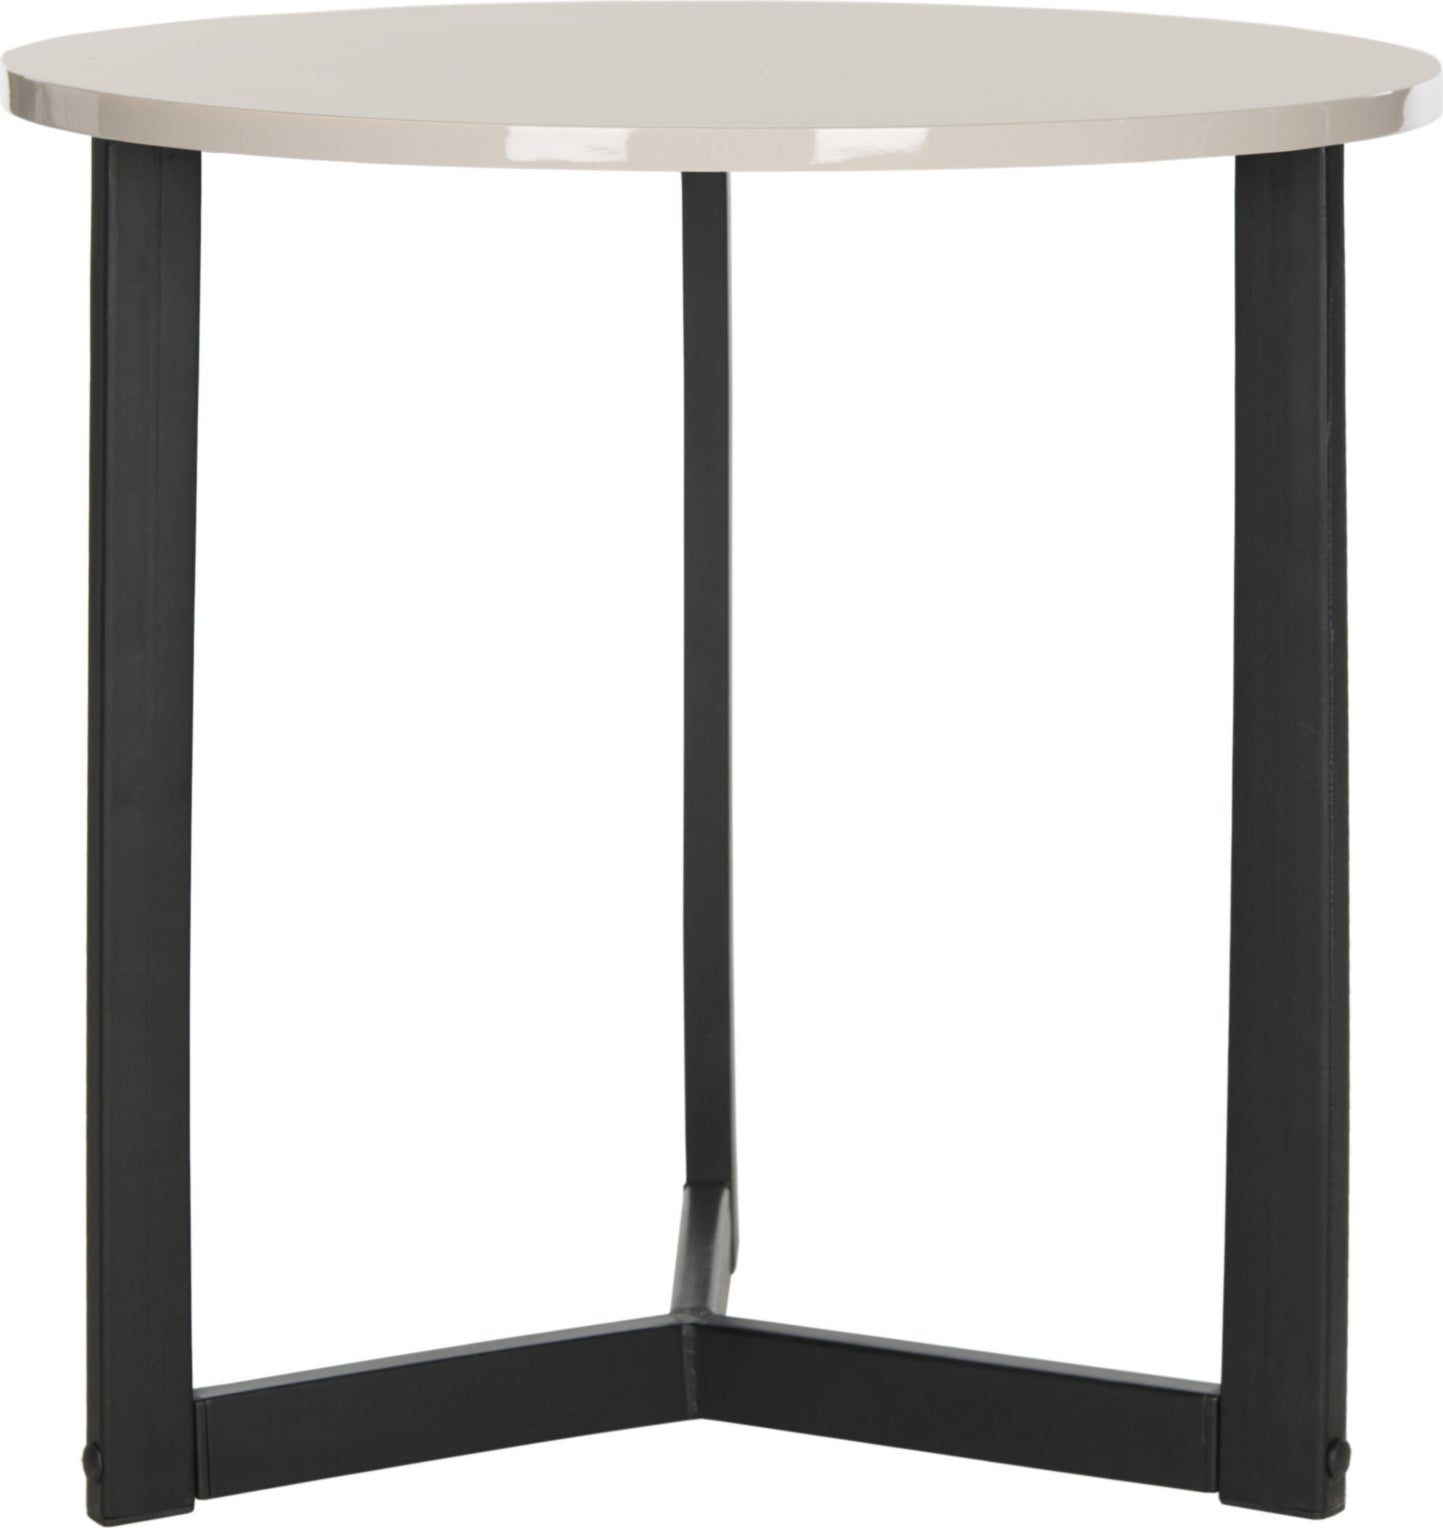 Safavieh Leonard Mid Century Modern Wood End Table Taupe and Black Furniture main image